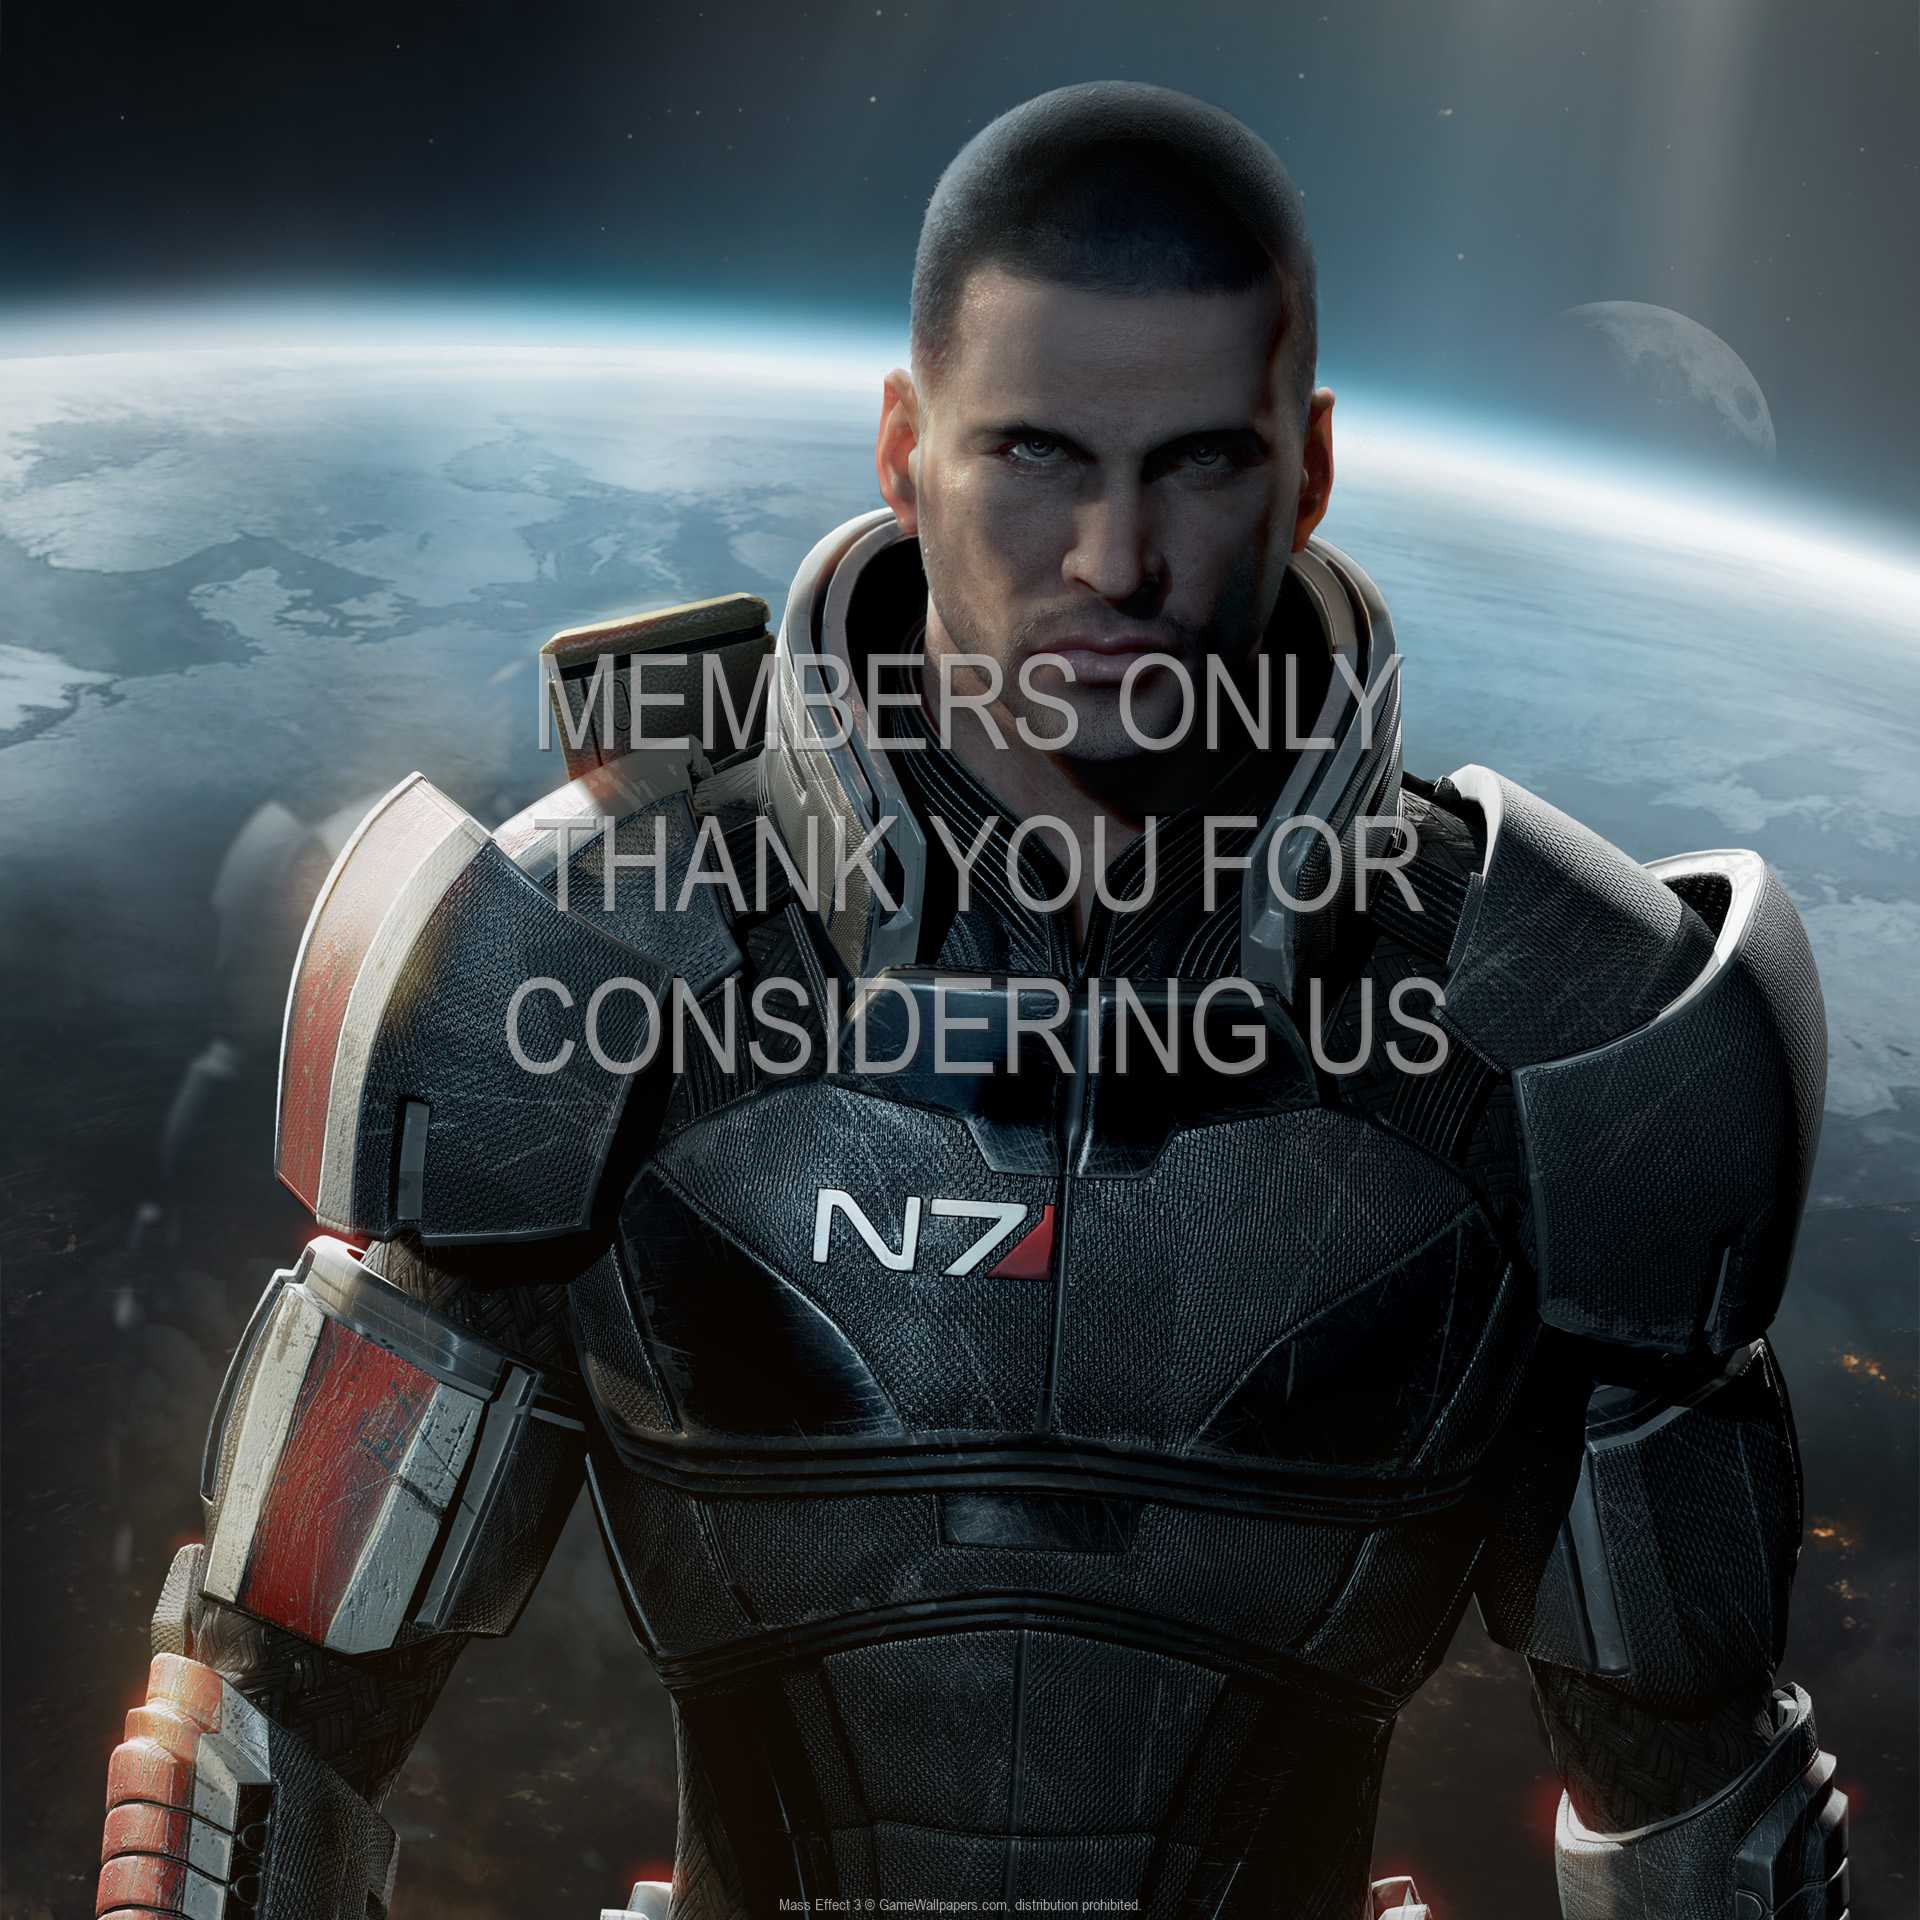 Mass Effect 3 1080p Horizontal Mobile fond d'cran 03